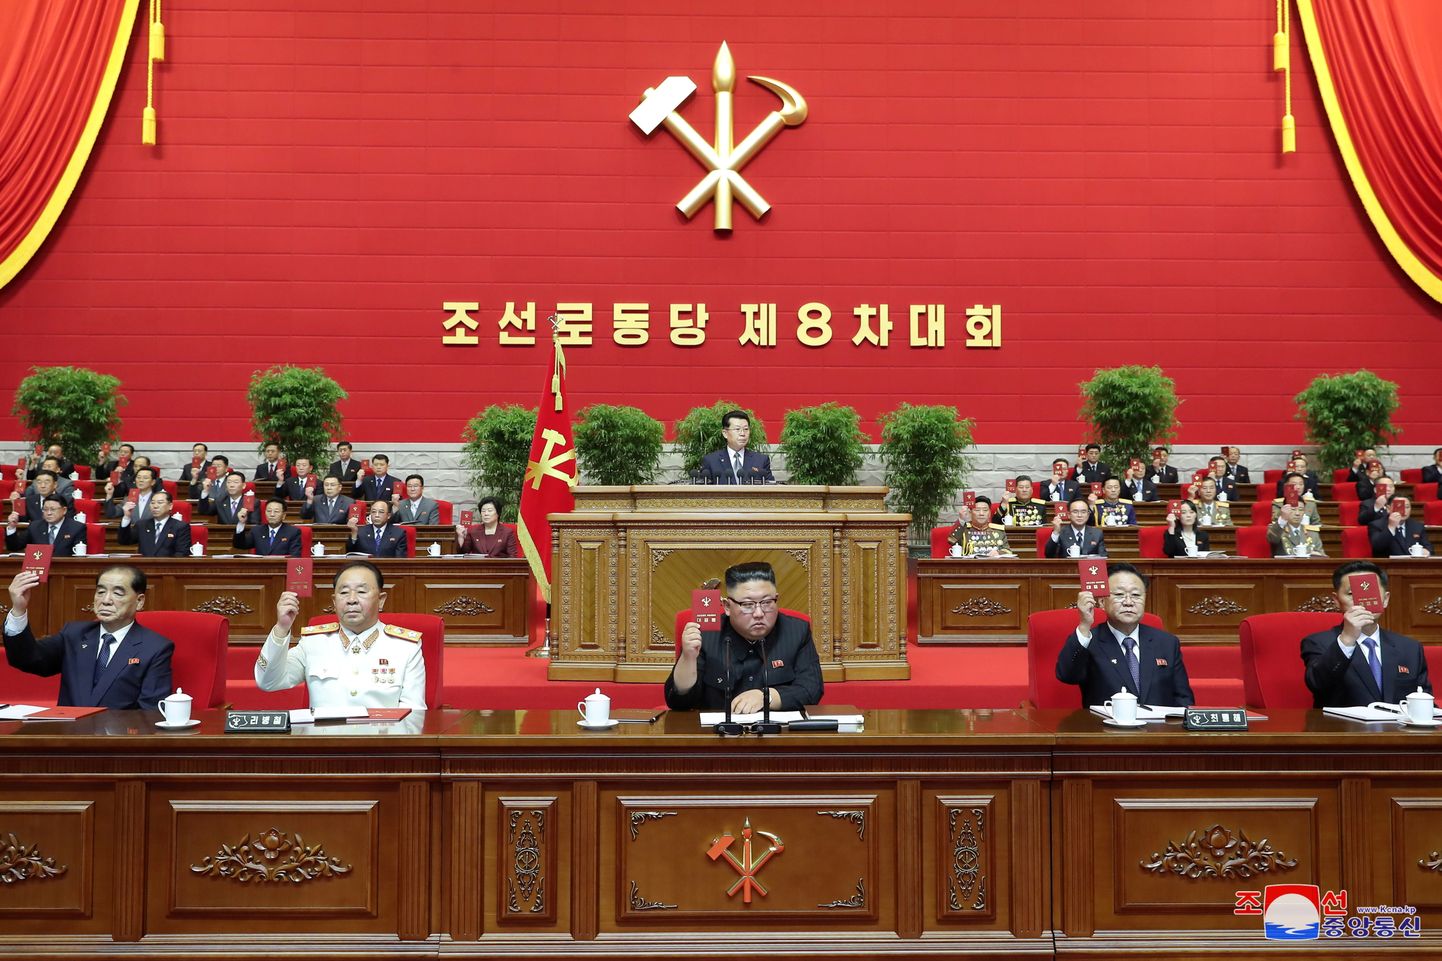 Põhja-Koreas algas valitseva Töölispartei kongress.